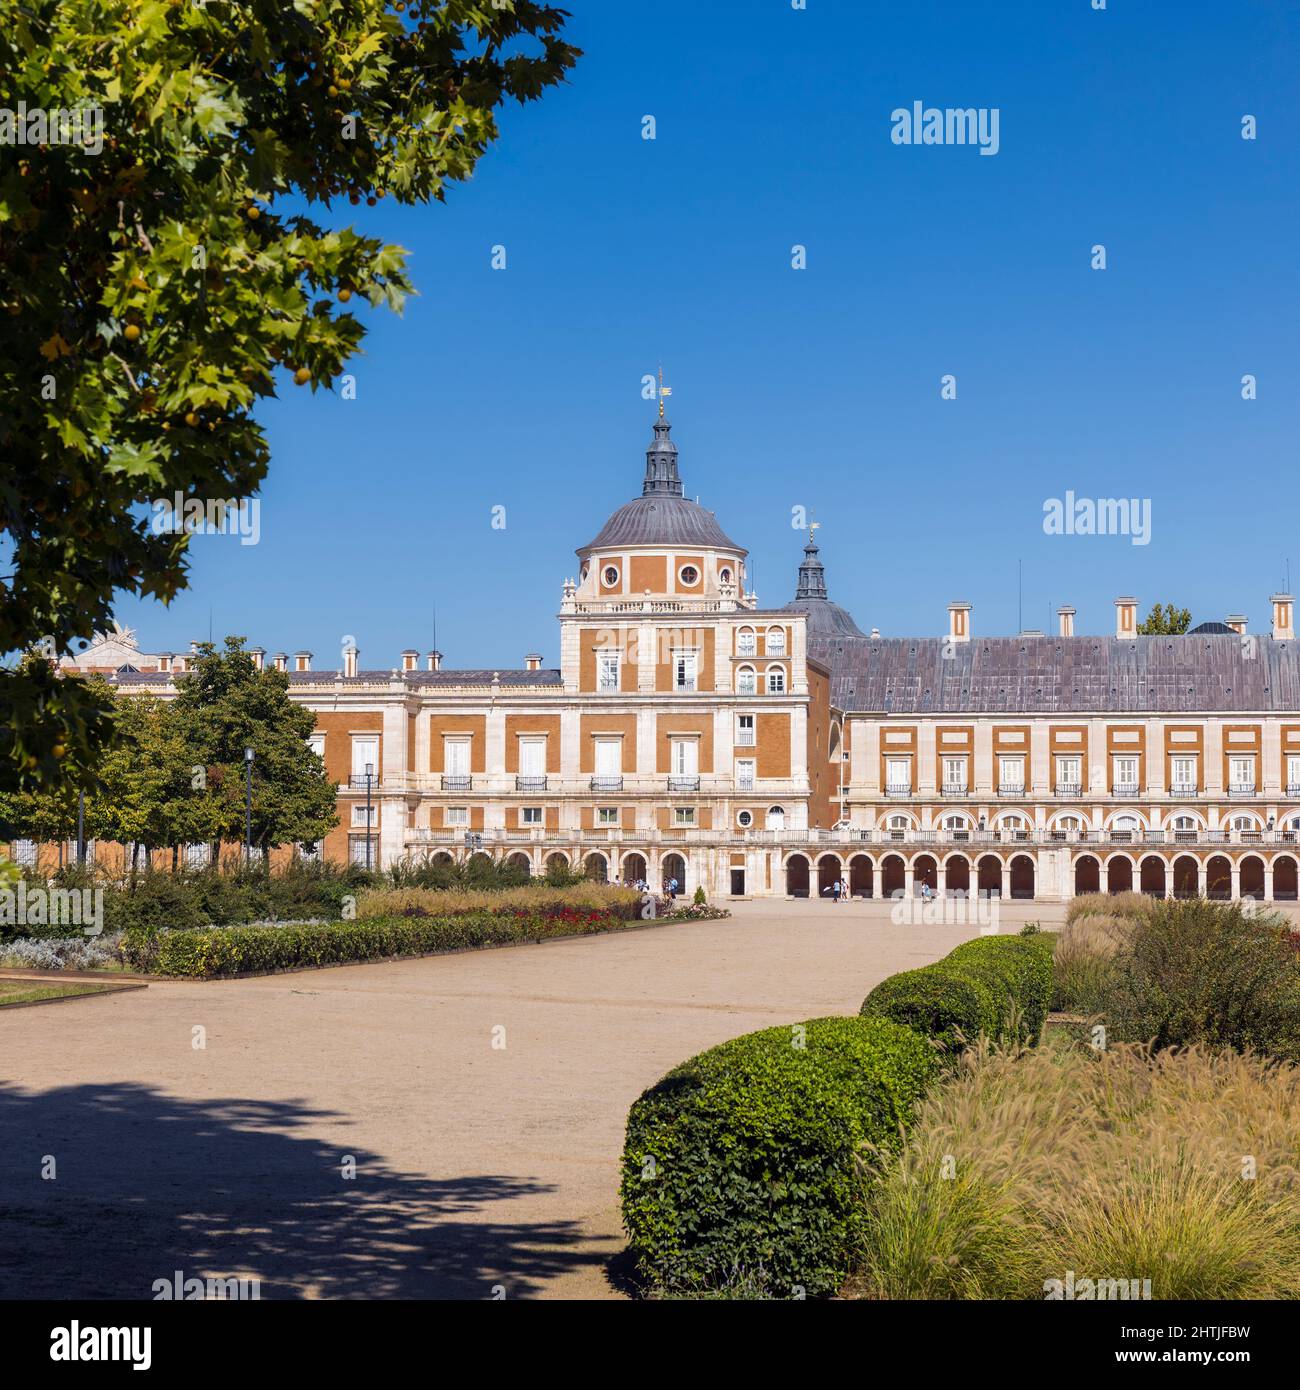 El Palacio Real de Aranjuez visto a través de la Plaza de Parejas, Aranjuez, Comunidad de Madrid, España. El palacio forma parte de la LAN Cultural Aranjuez Foto de stock